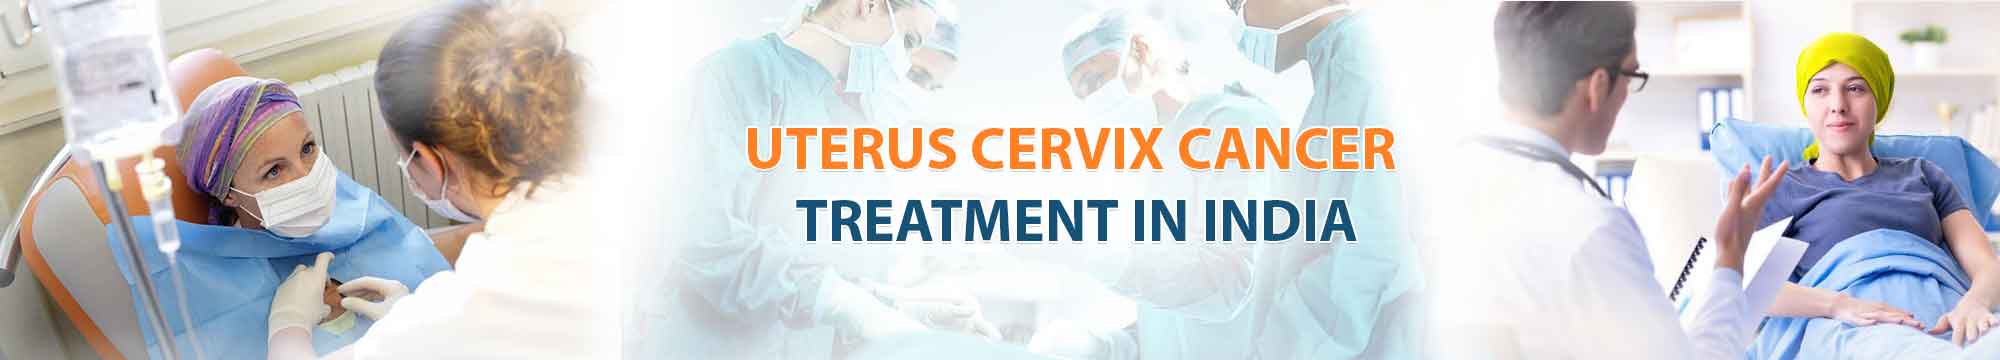 Uterus Cervix Cancer India